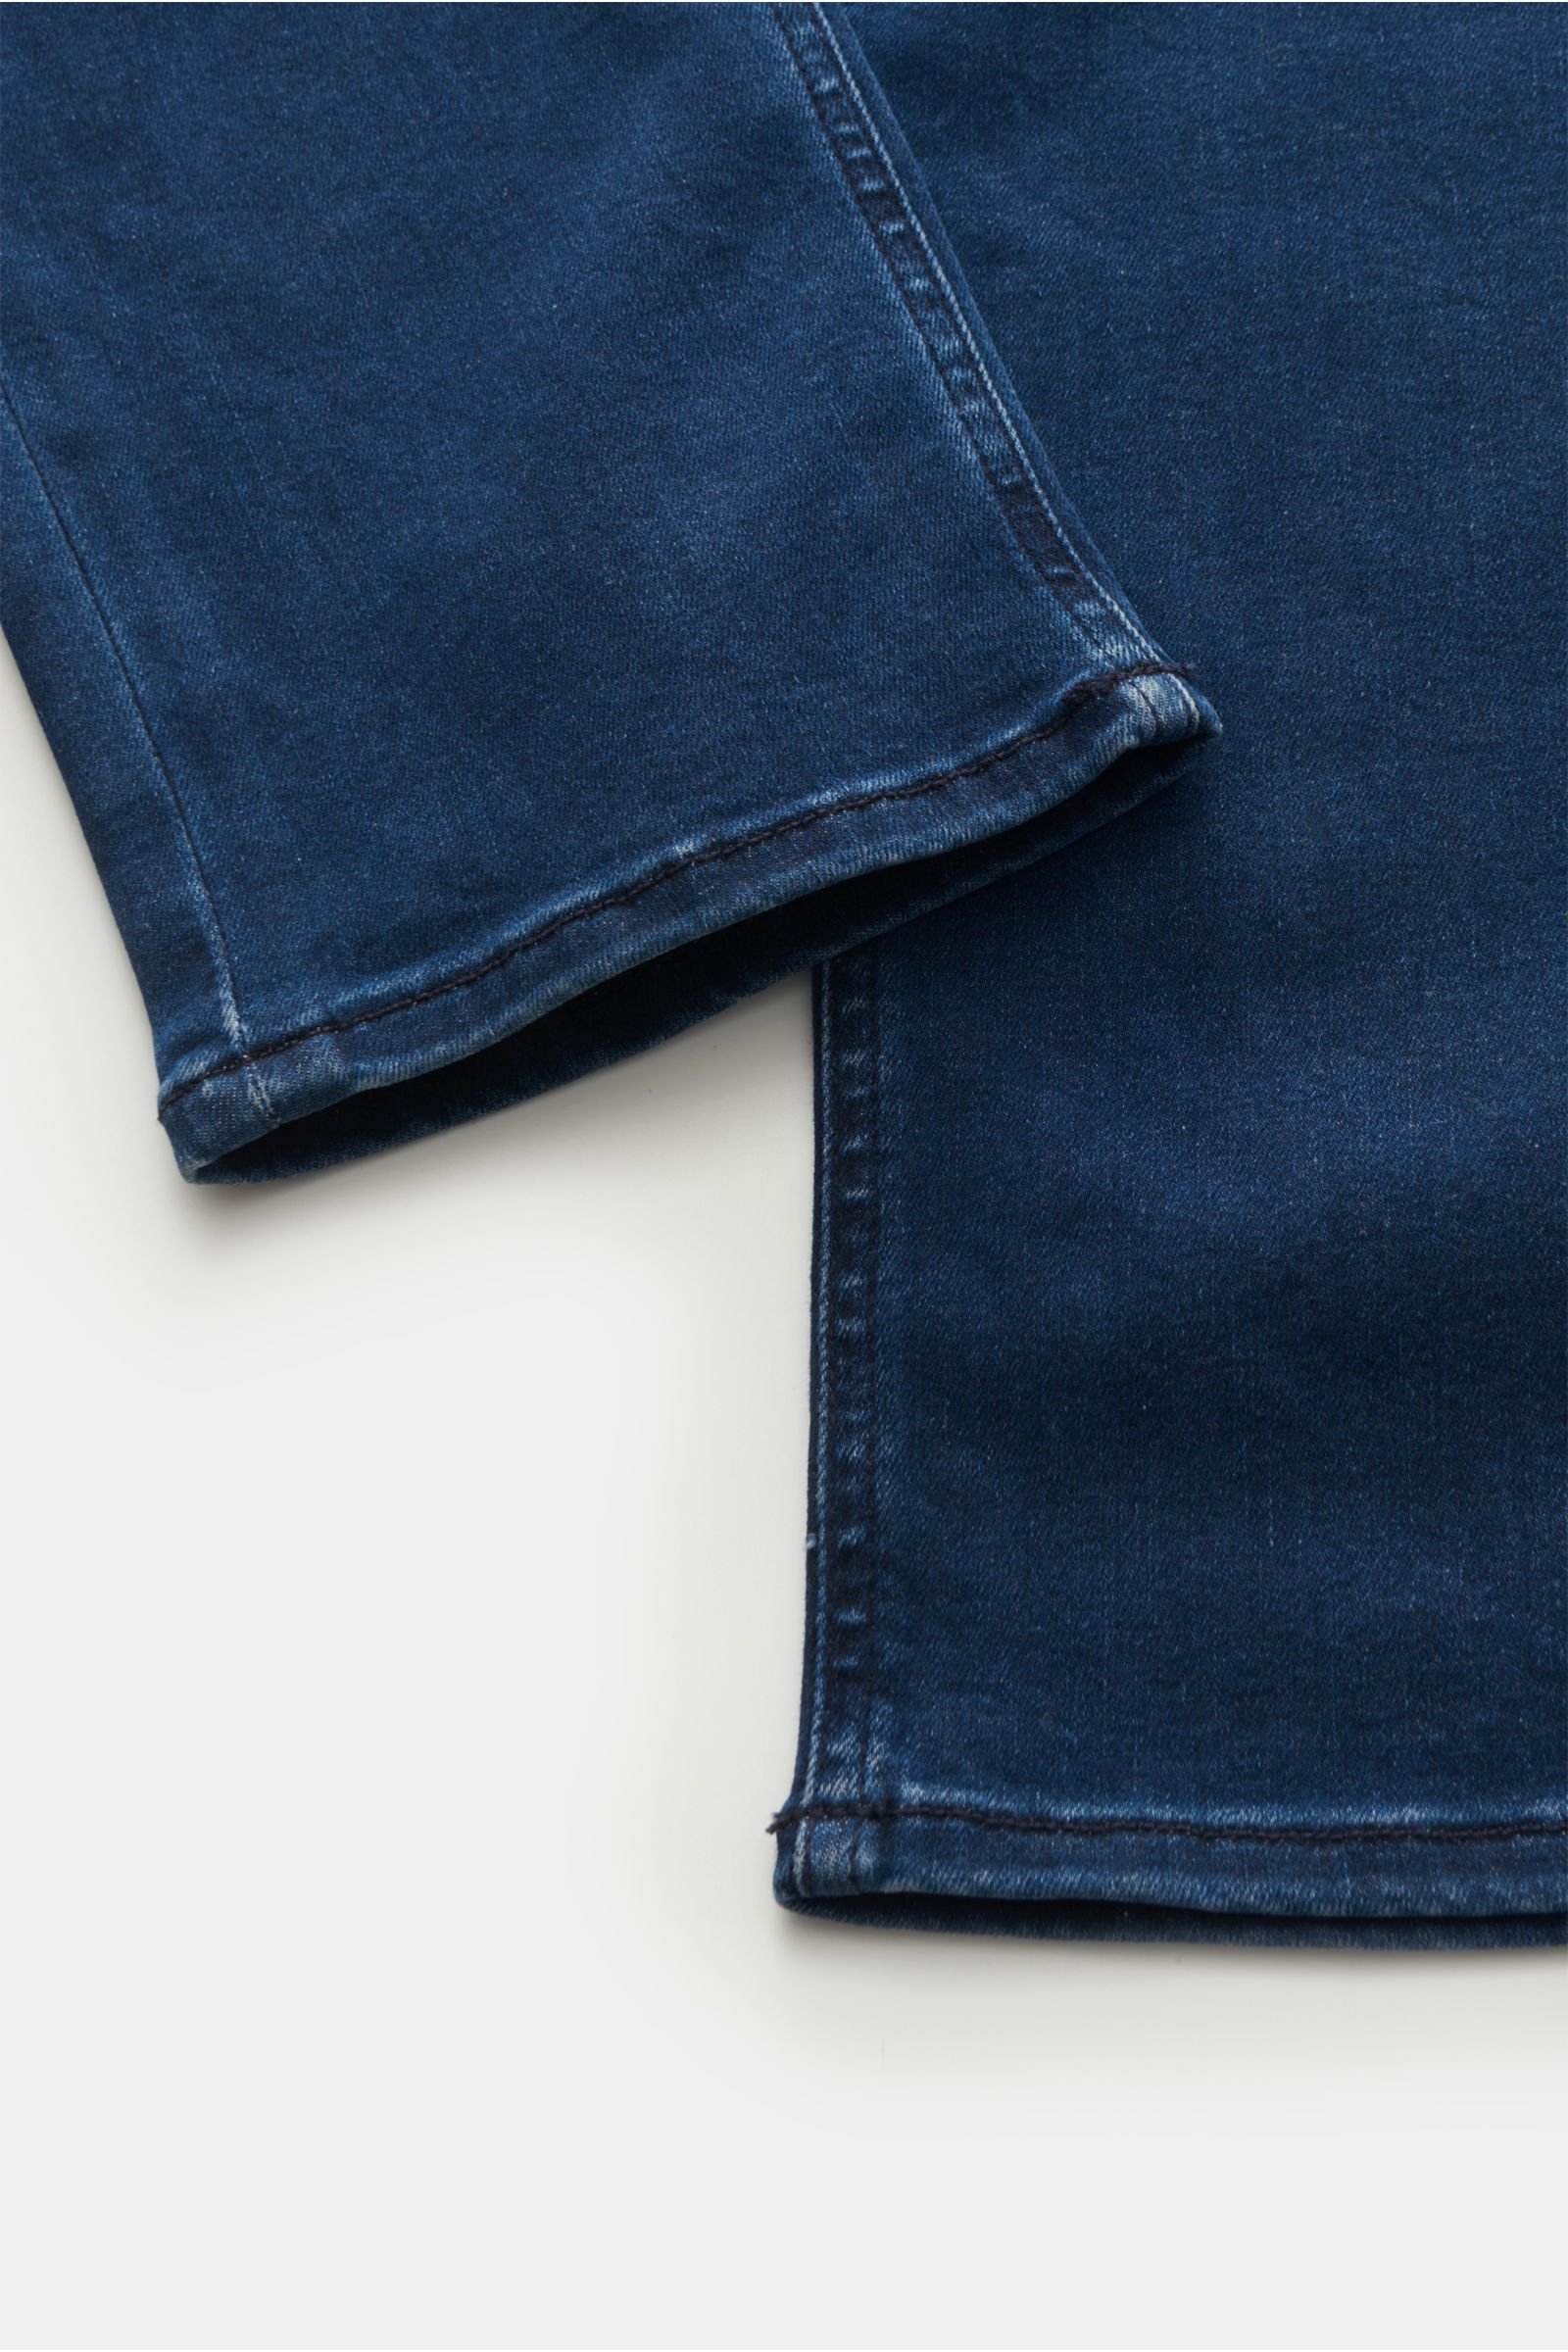 HANDPICKED \'Orvieto\' navy | Hamburg BRAUN jeans